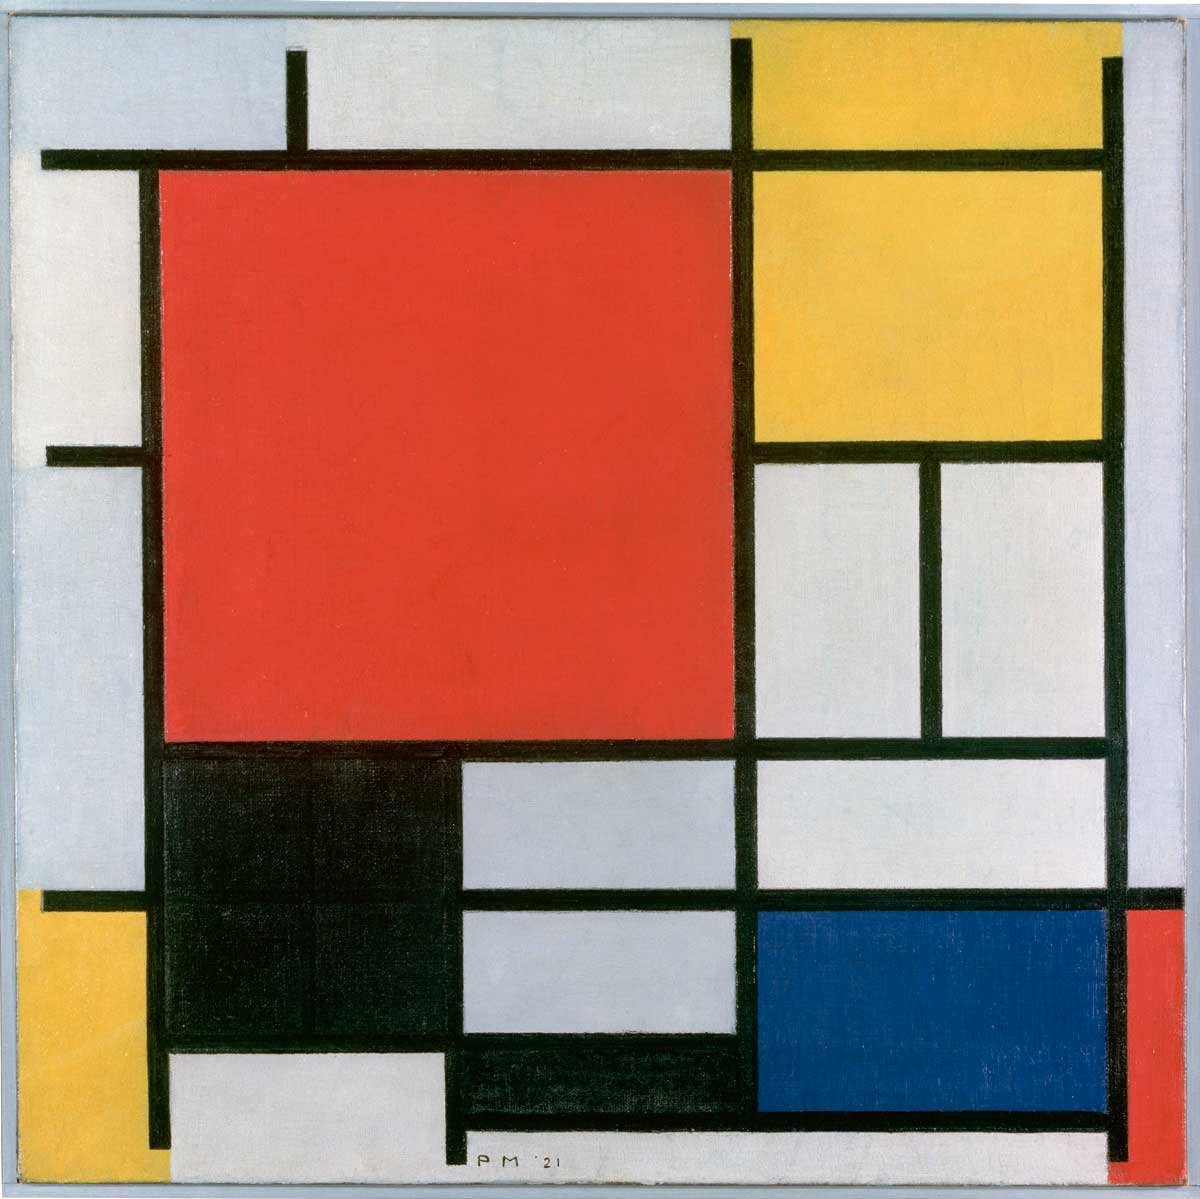 Pef A través de alguna cosa Mondrian, creador de un nuevo lenguajeDescubrir el Arte, la revista líder  de arte en español